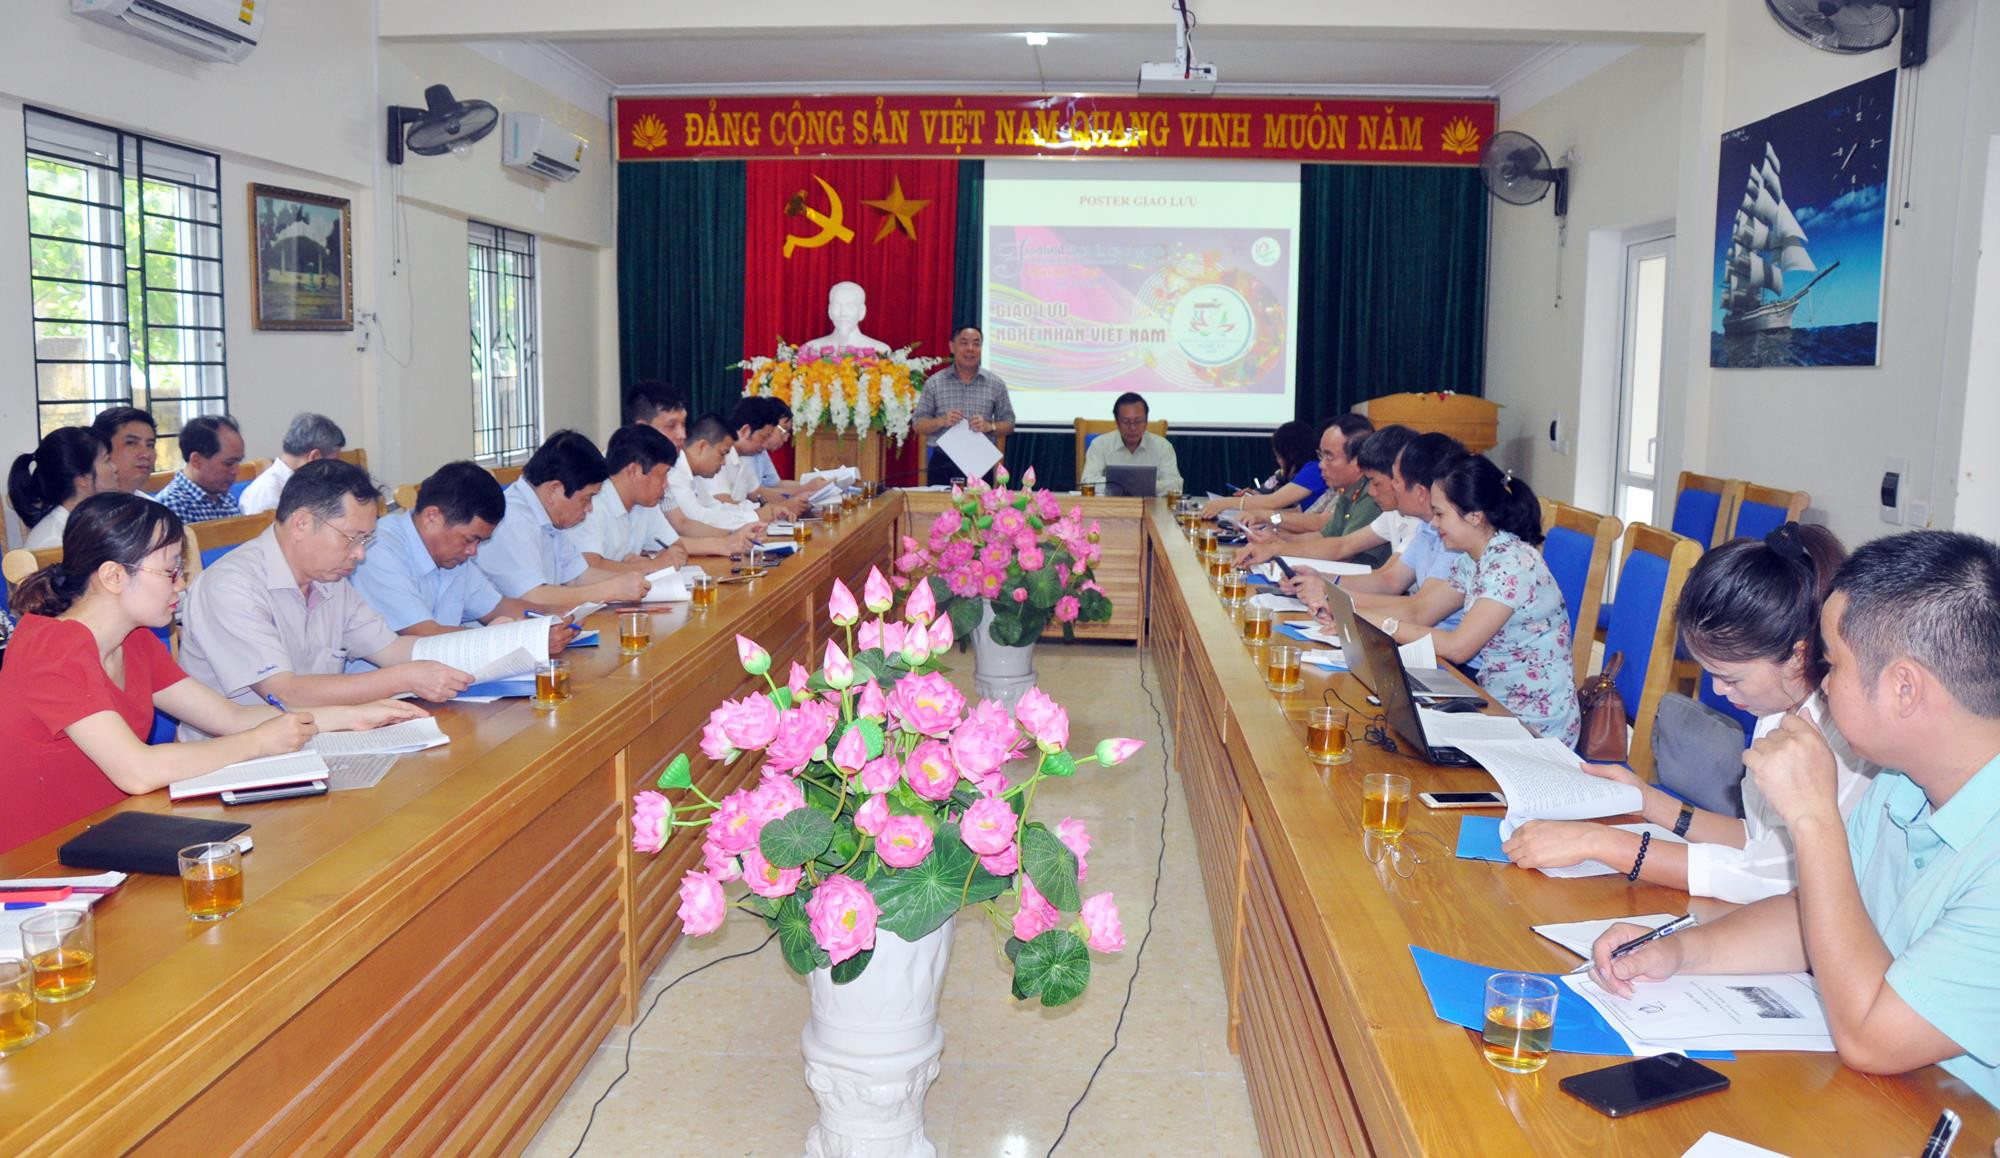 Lãnh đạo Sở Du lịch và Hiệp hội Văn hóa Ẩm thực Việt Nam đồng chủ trì cuộc họp, cùng tham dự có đại diện các sở, ban, ngành cấp tỉnh và các đơn vị liên quan. 